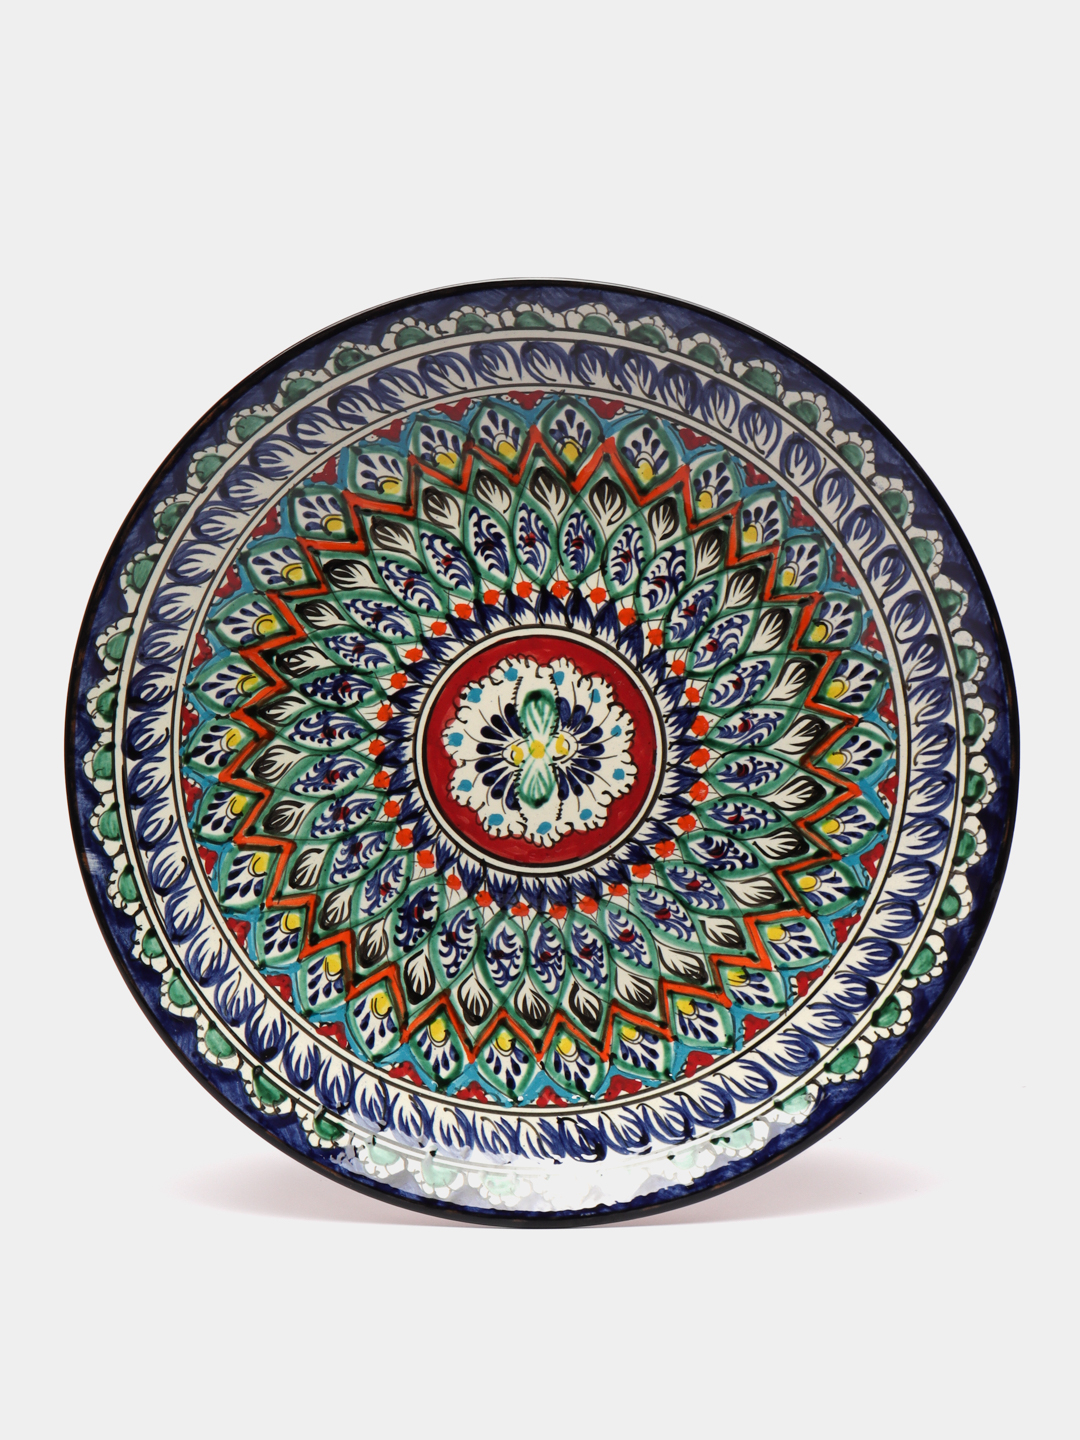 Узбекские тарелки для плова. Ляган Риштанская керамика 28см. Ляган 42 см красный мехроб. Тарелка Ляган Бухара d-32. Ляган узбекский.